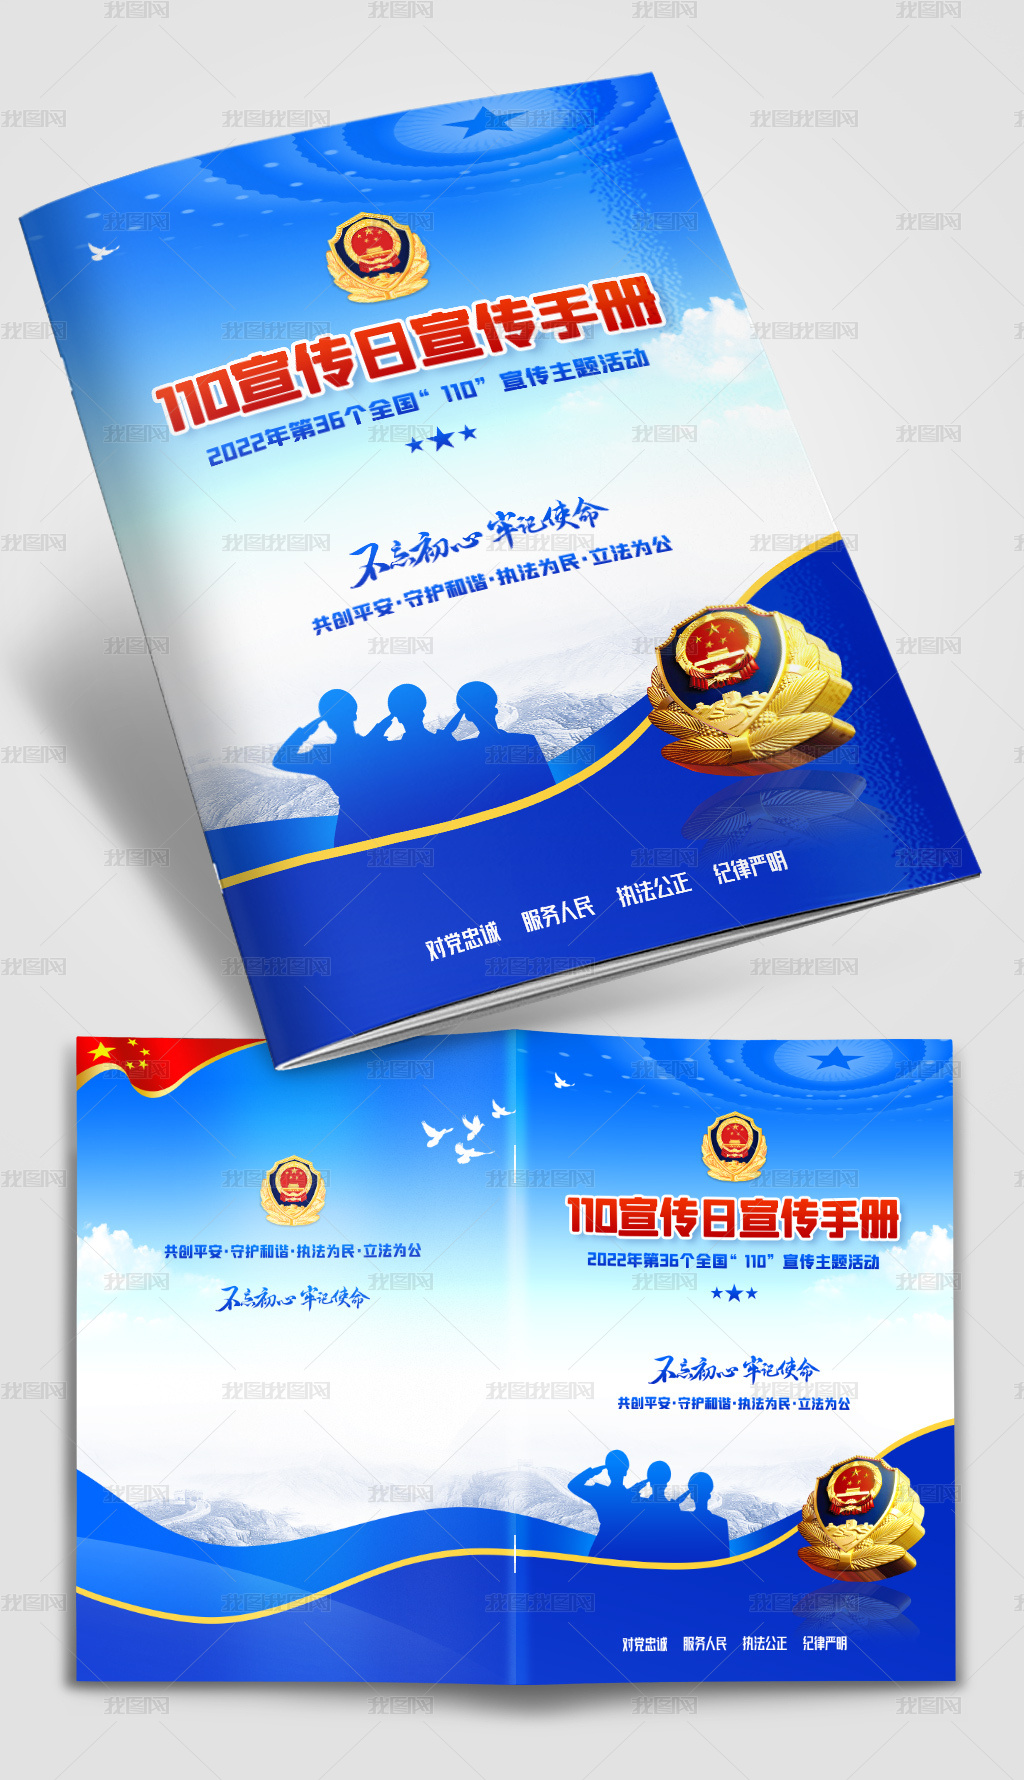 全国110宣传日手册画册封面设计蓝色党建封面